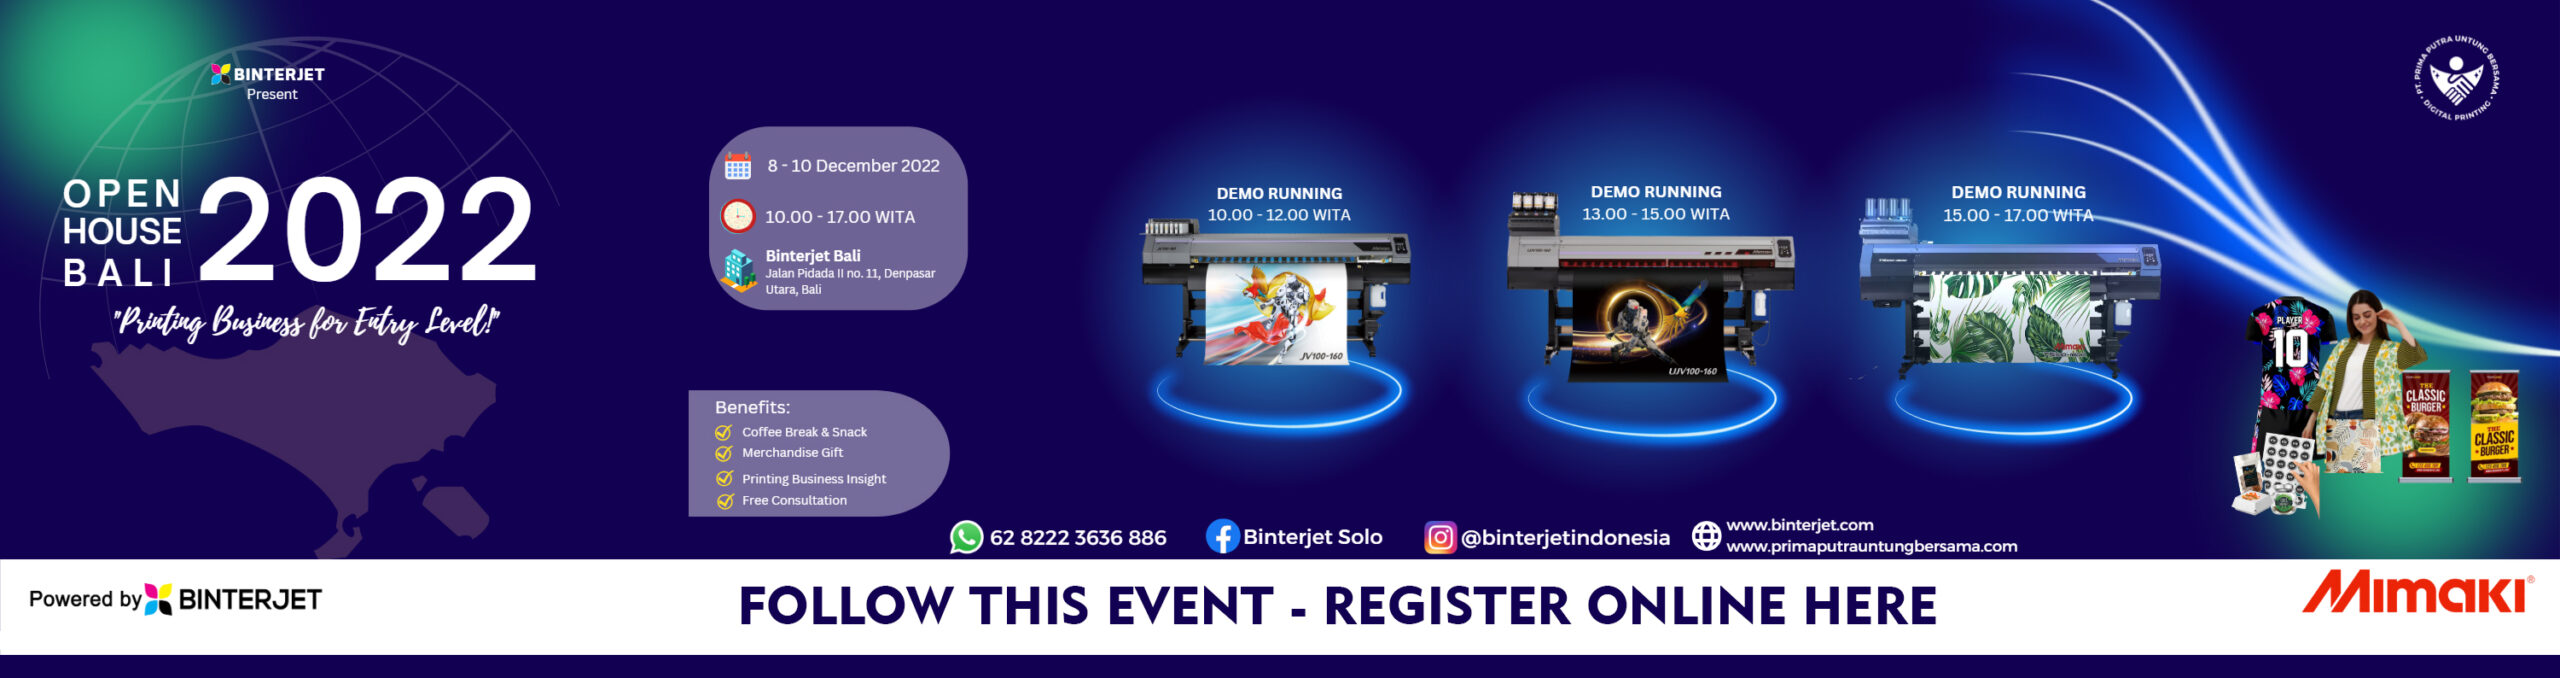 registrasi online binterjet event